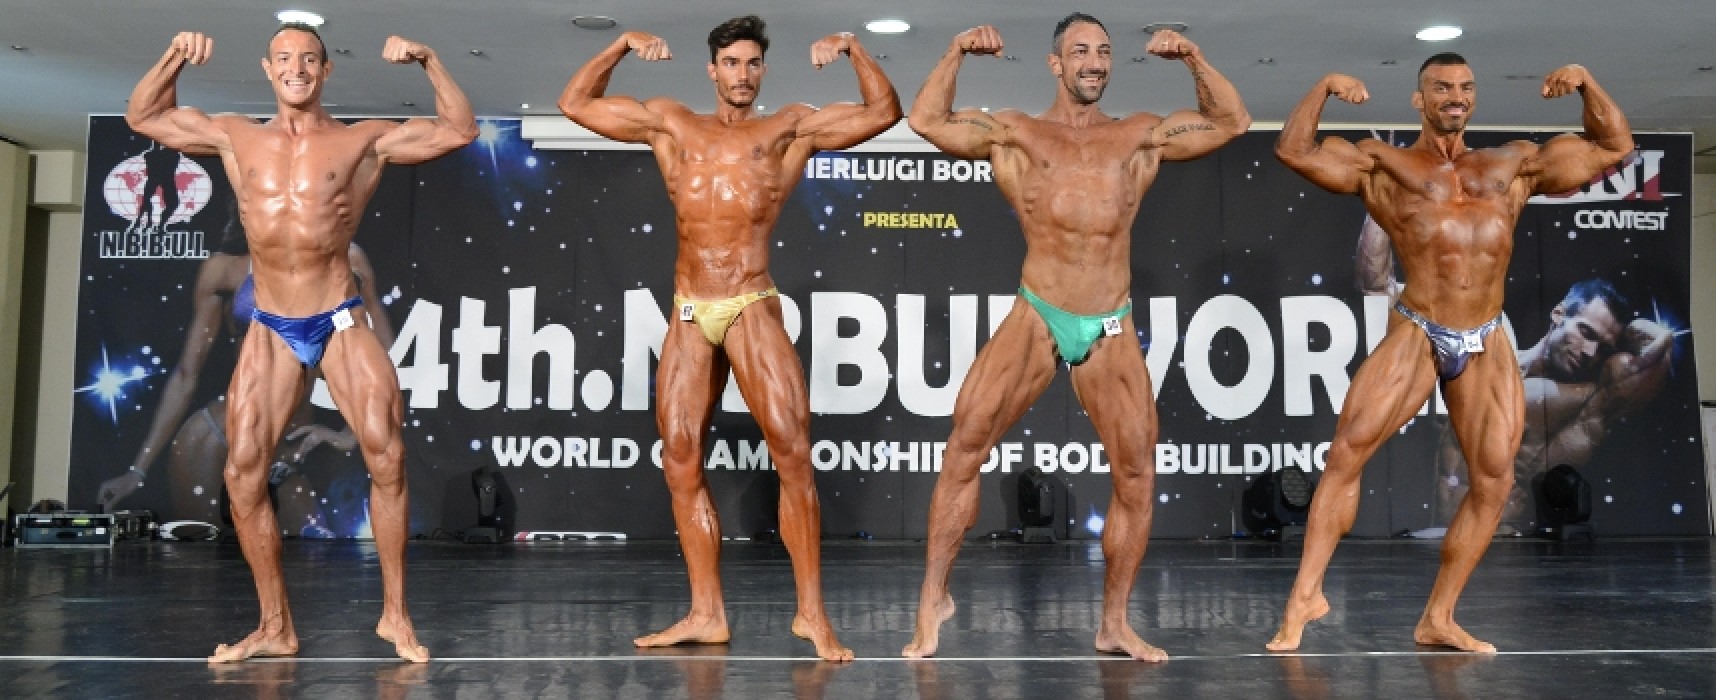 Il bodybuilder biscegliese Paky Dell’Olio torna a vincere, oro e argento a Castellaneta Marina